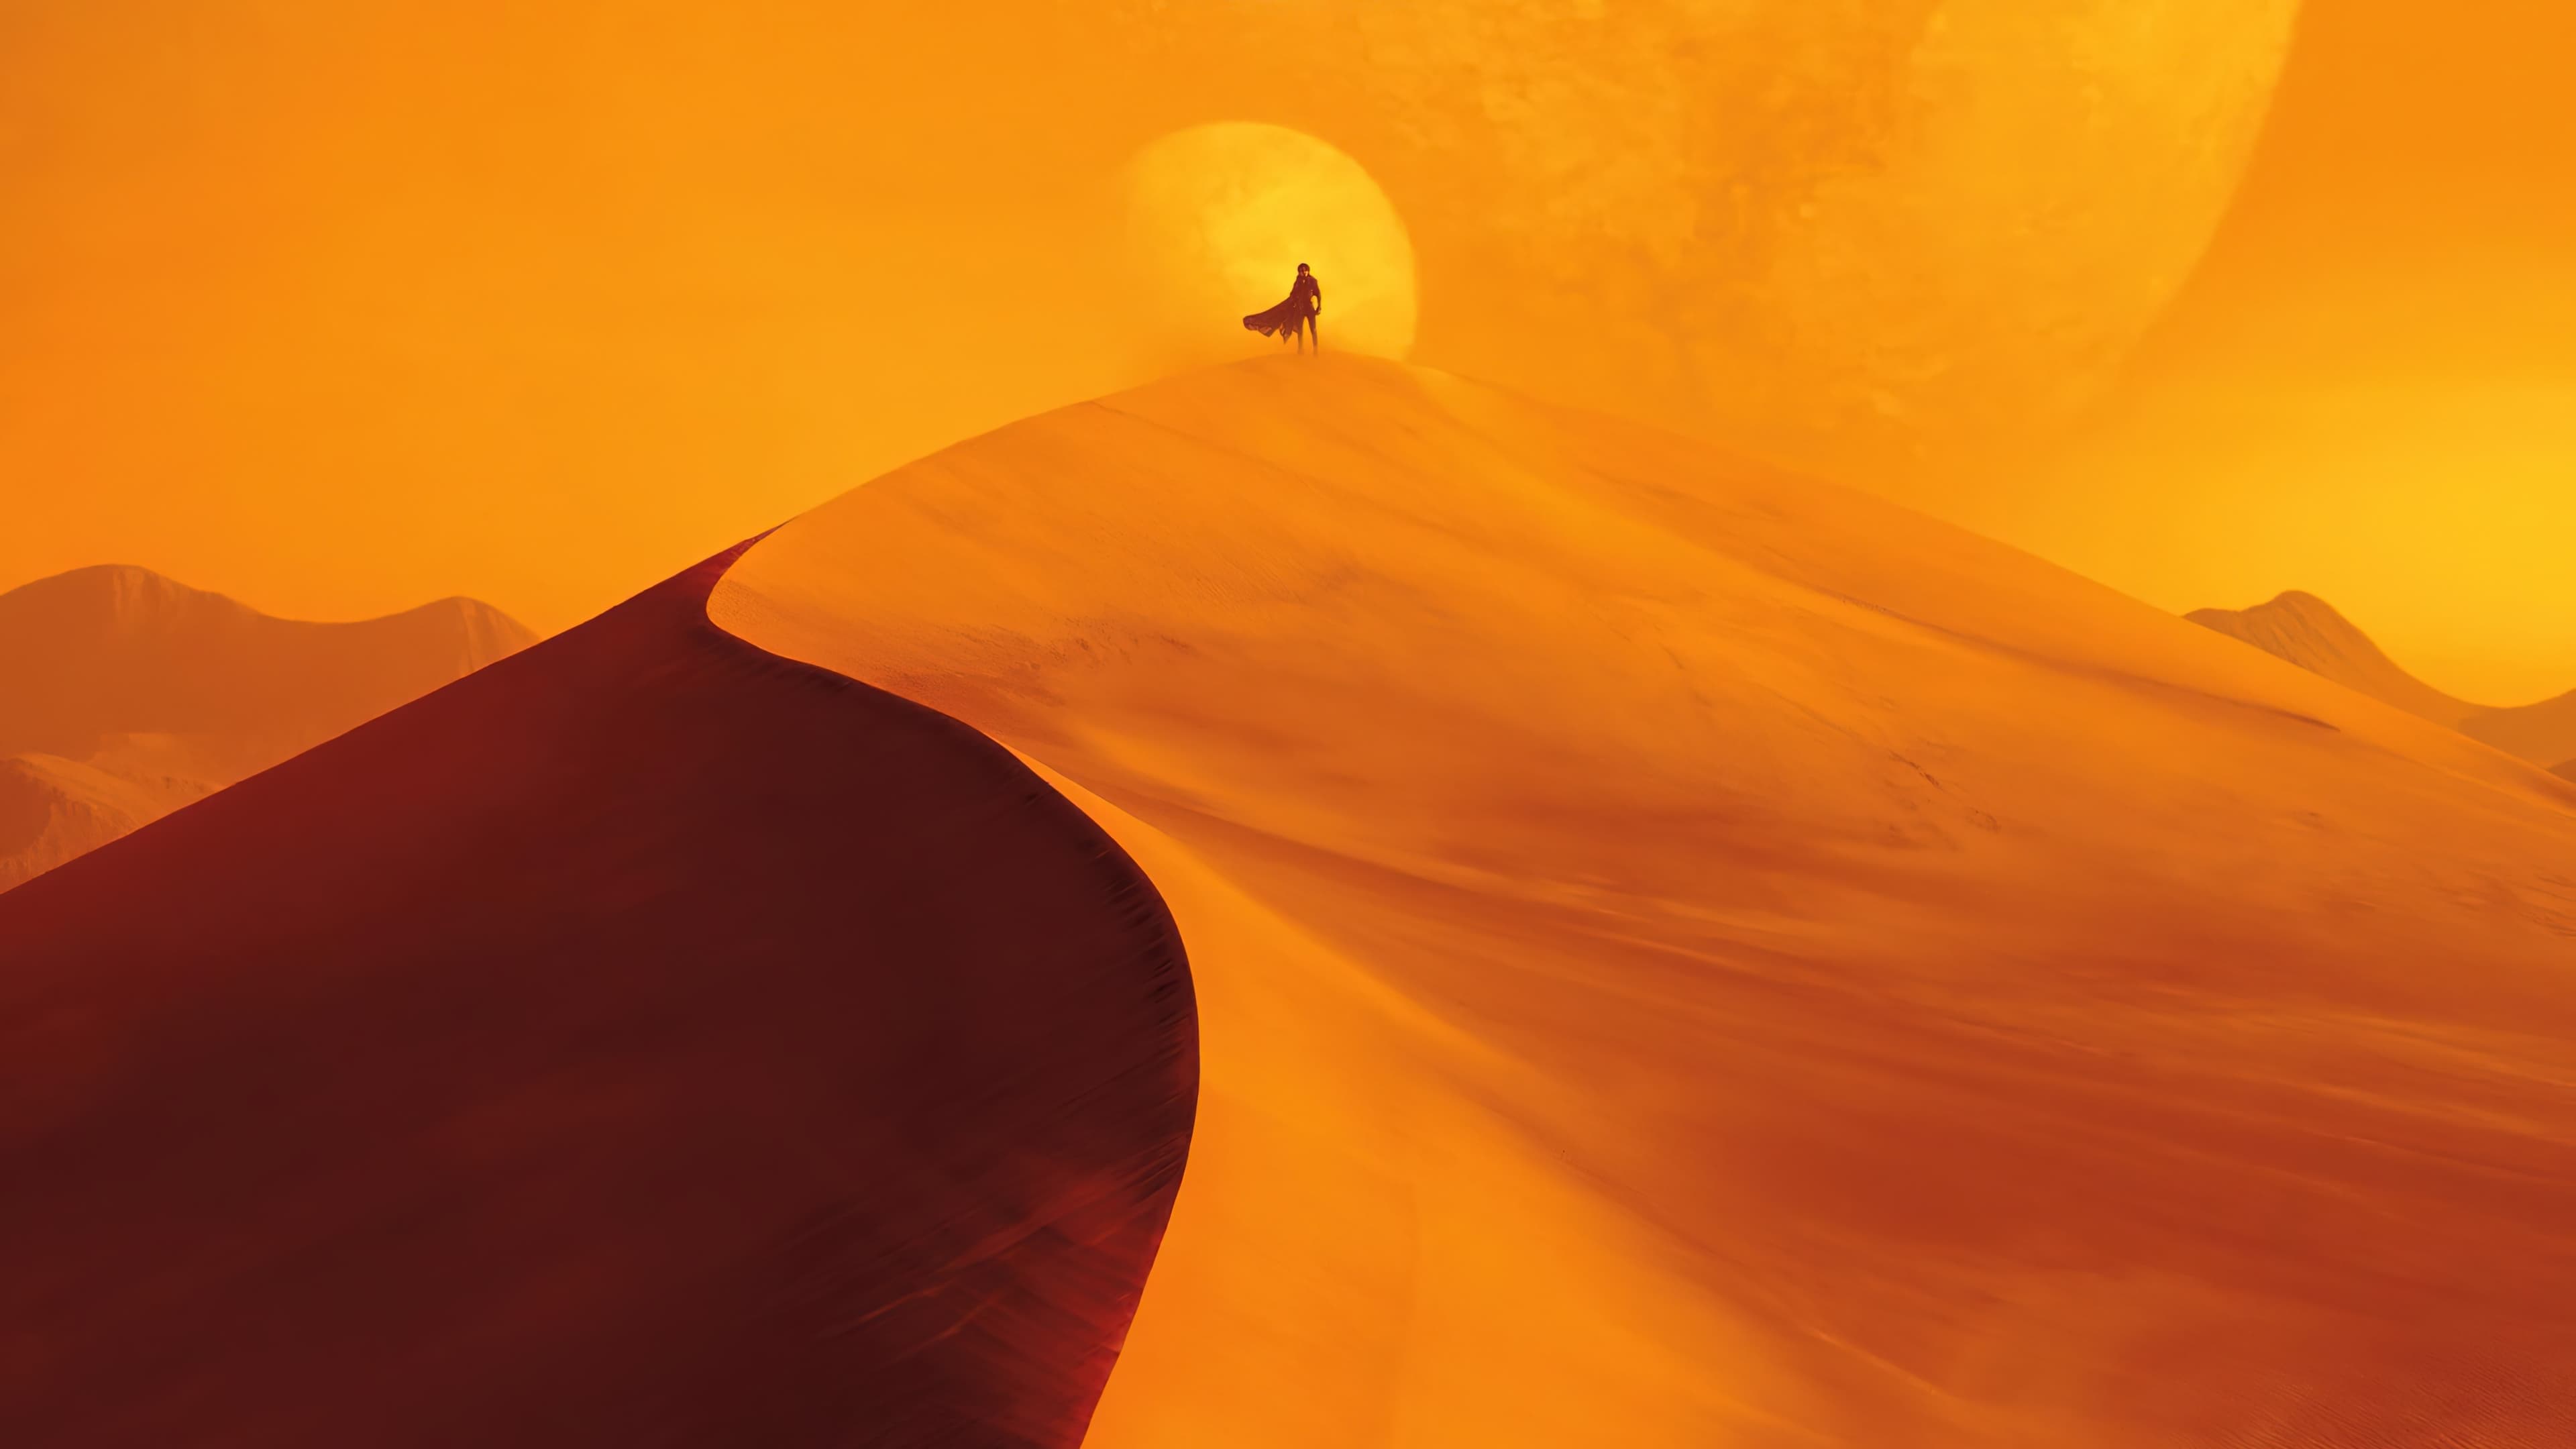 Dune: Part Three